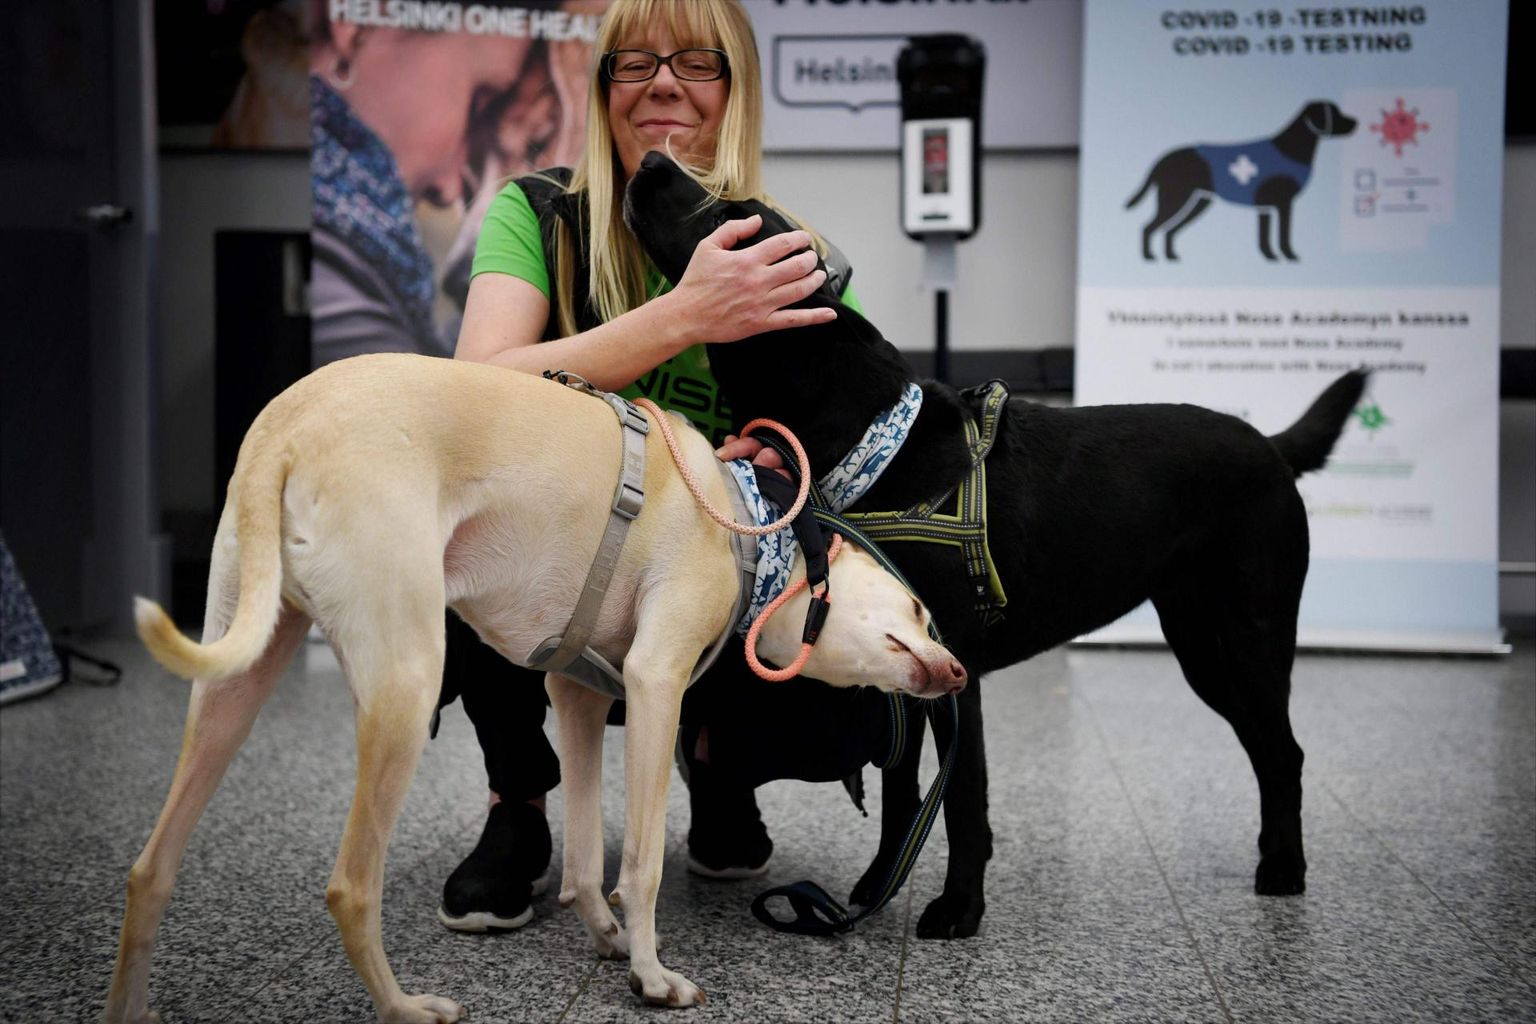 Koroonakoerteks õppetatud Kössi ja Miina (must) koos oma treeneri ja koerajuhi Susanna Paavilaisega Helsingis Vantaa lennujaamas.